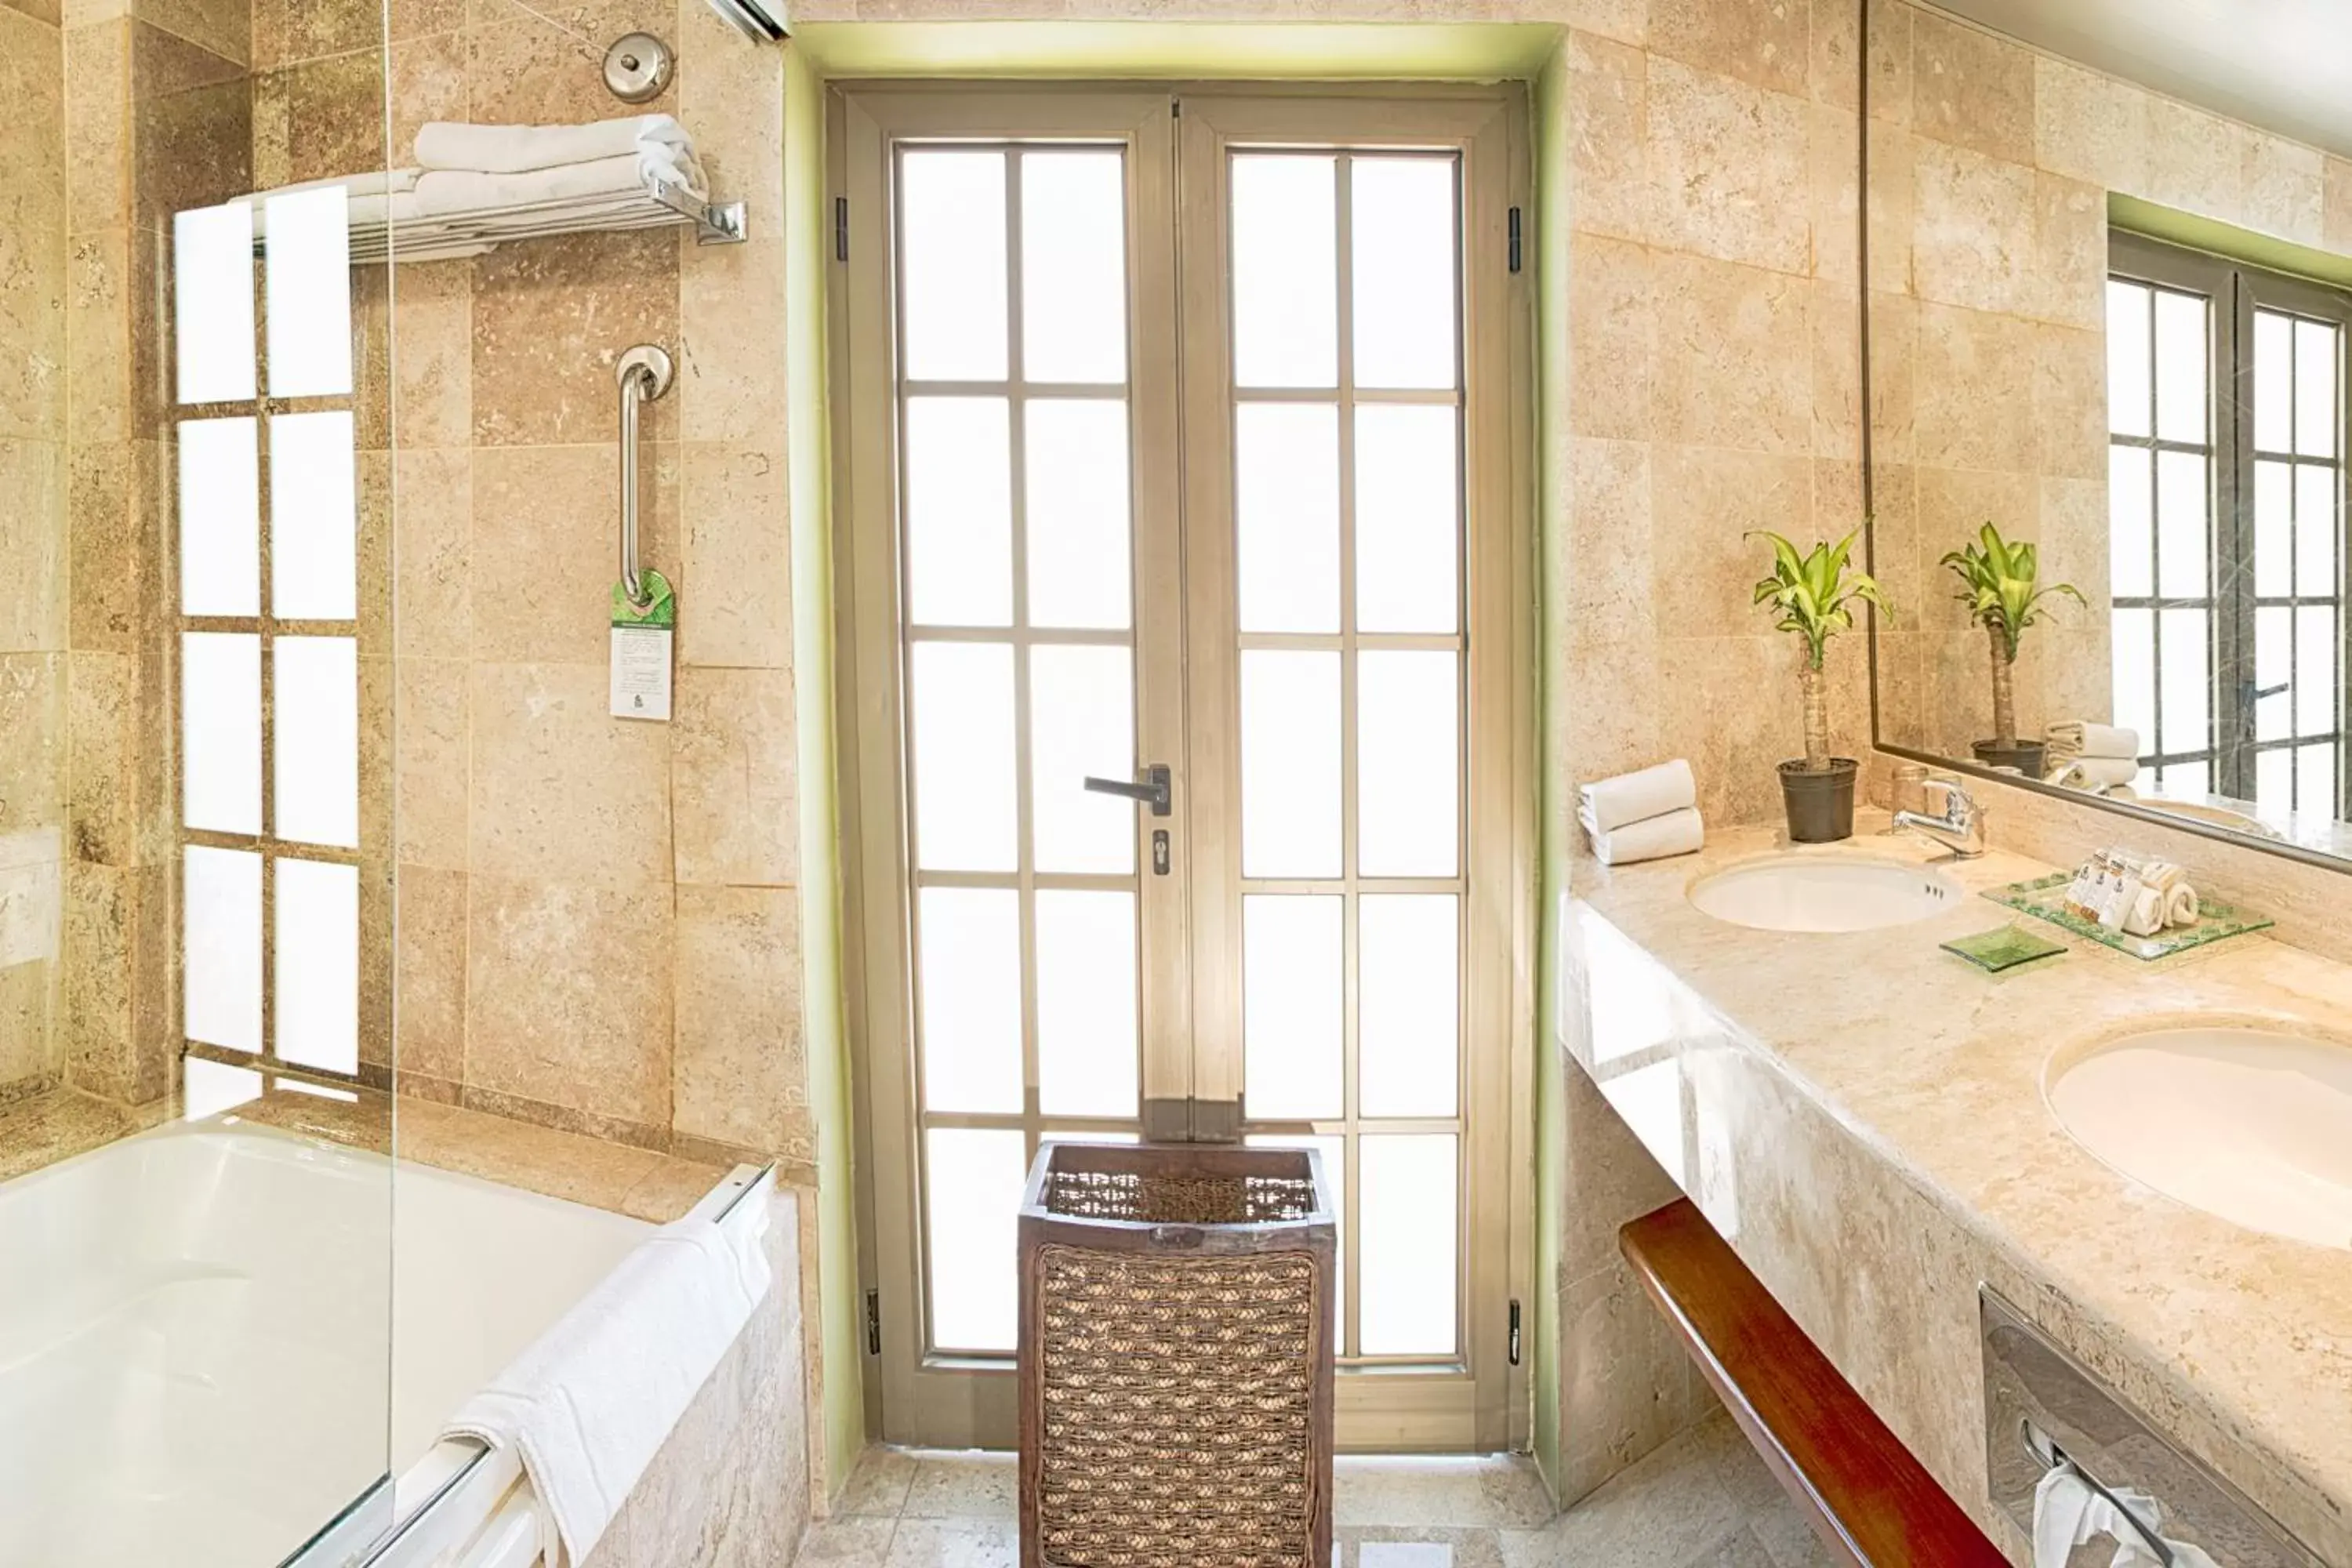 Shower, Bathroom in Hotel Los Itzaes by 5th av